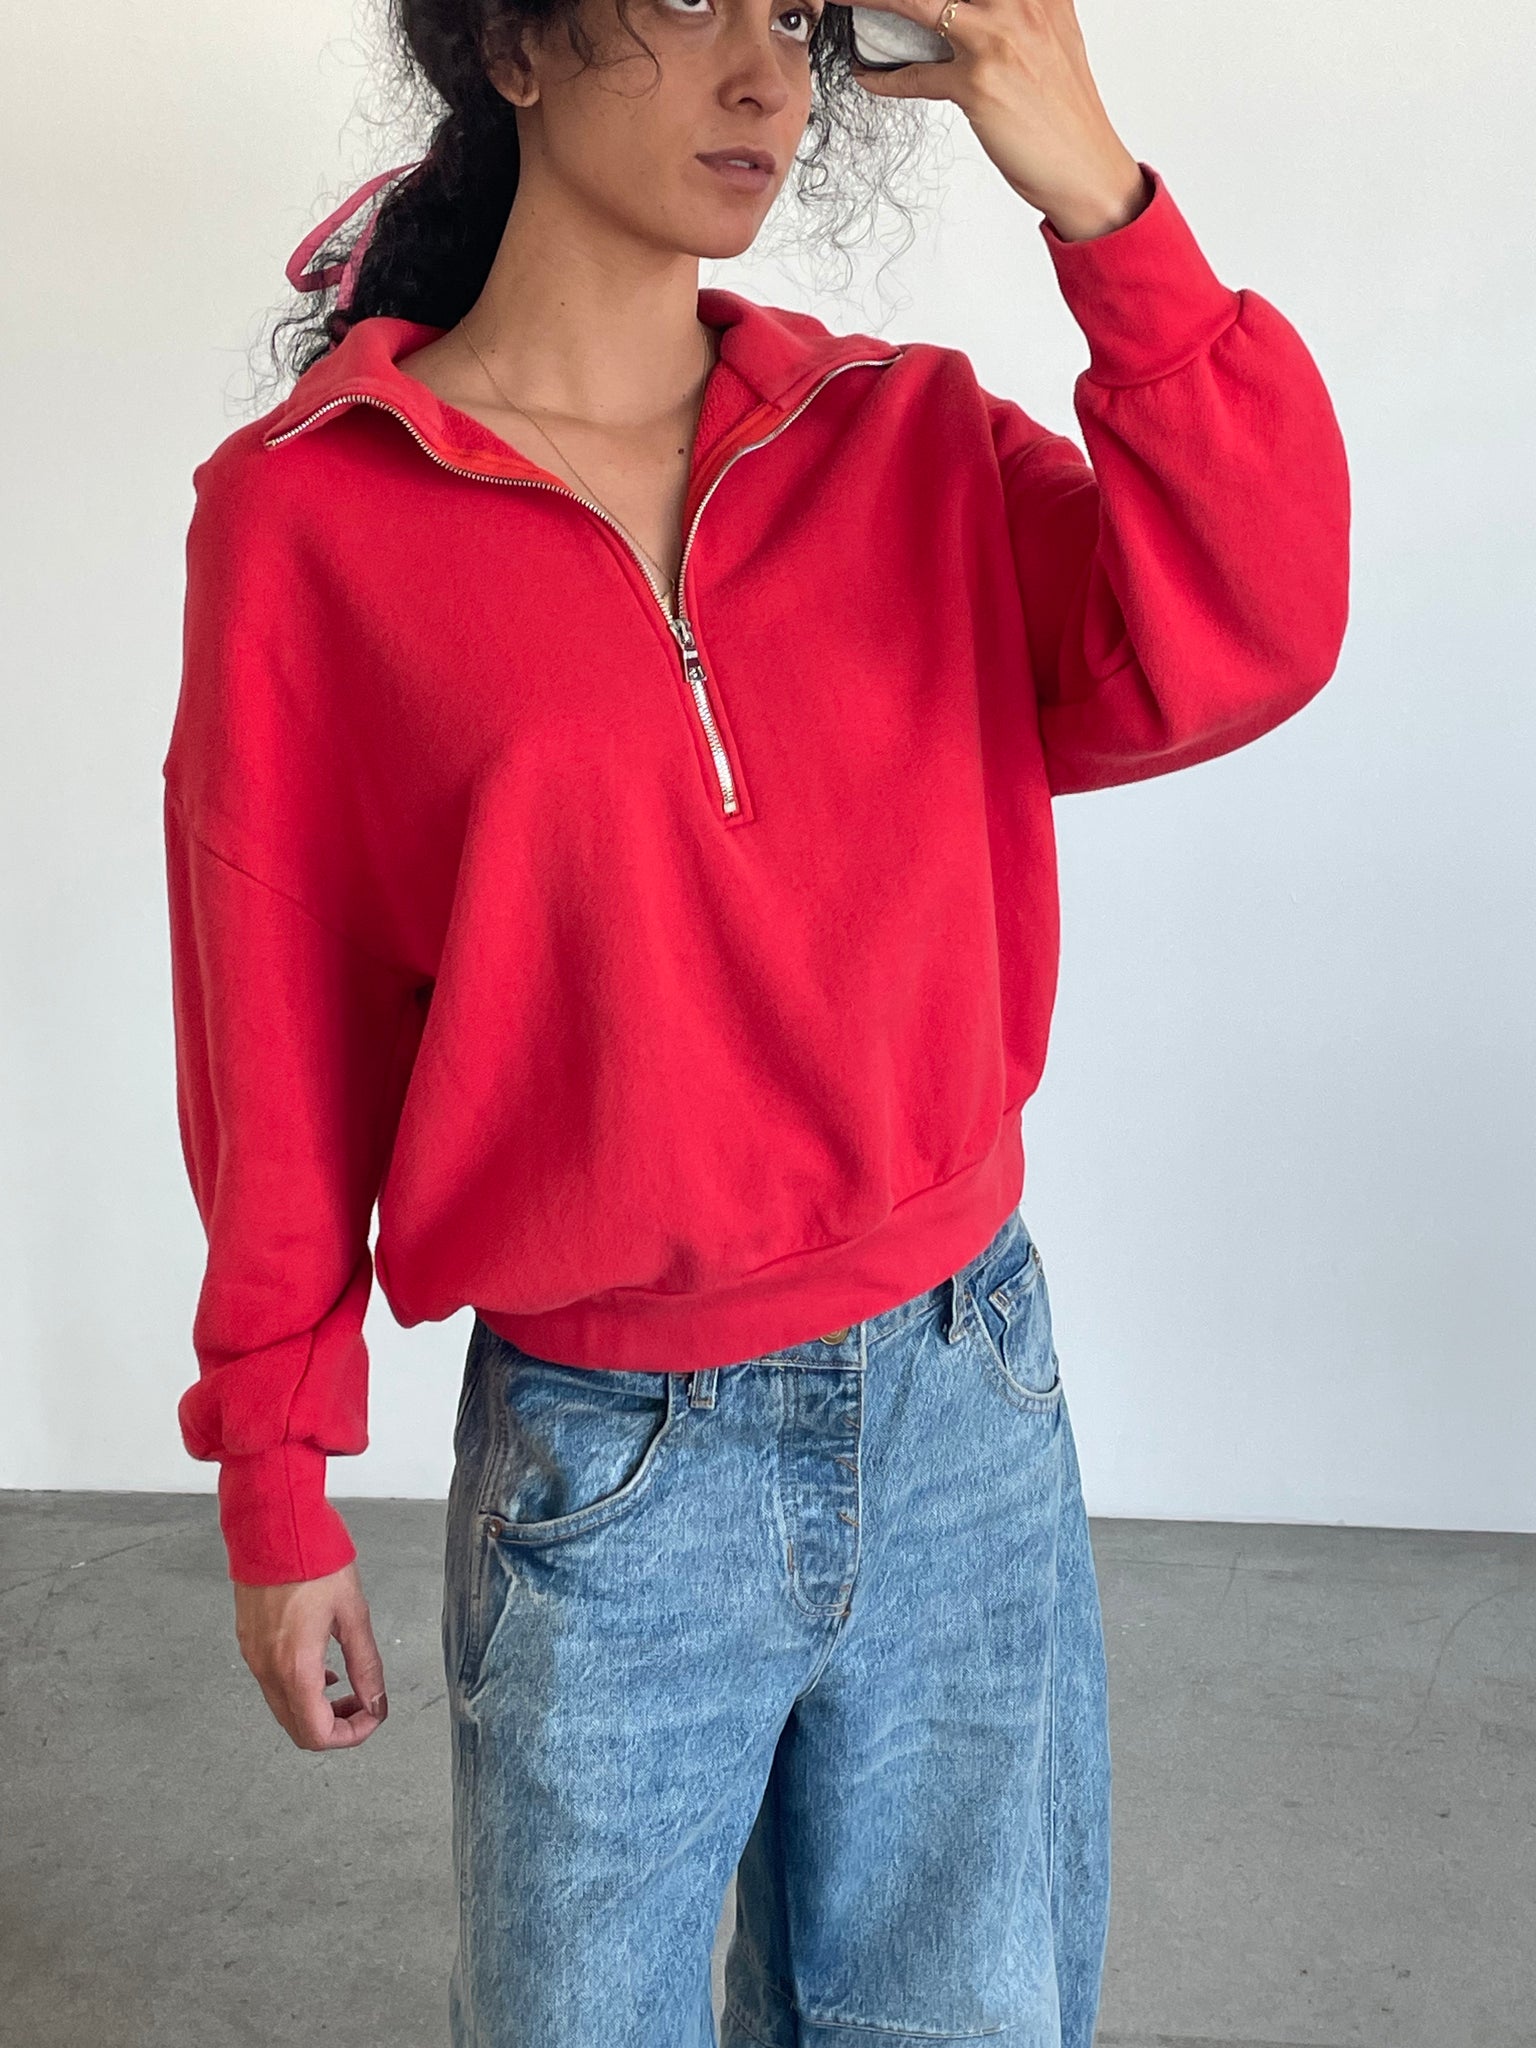 SM archive red zip sweatshirt